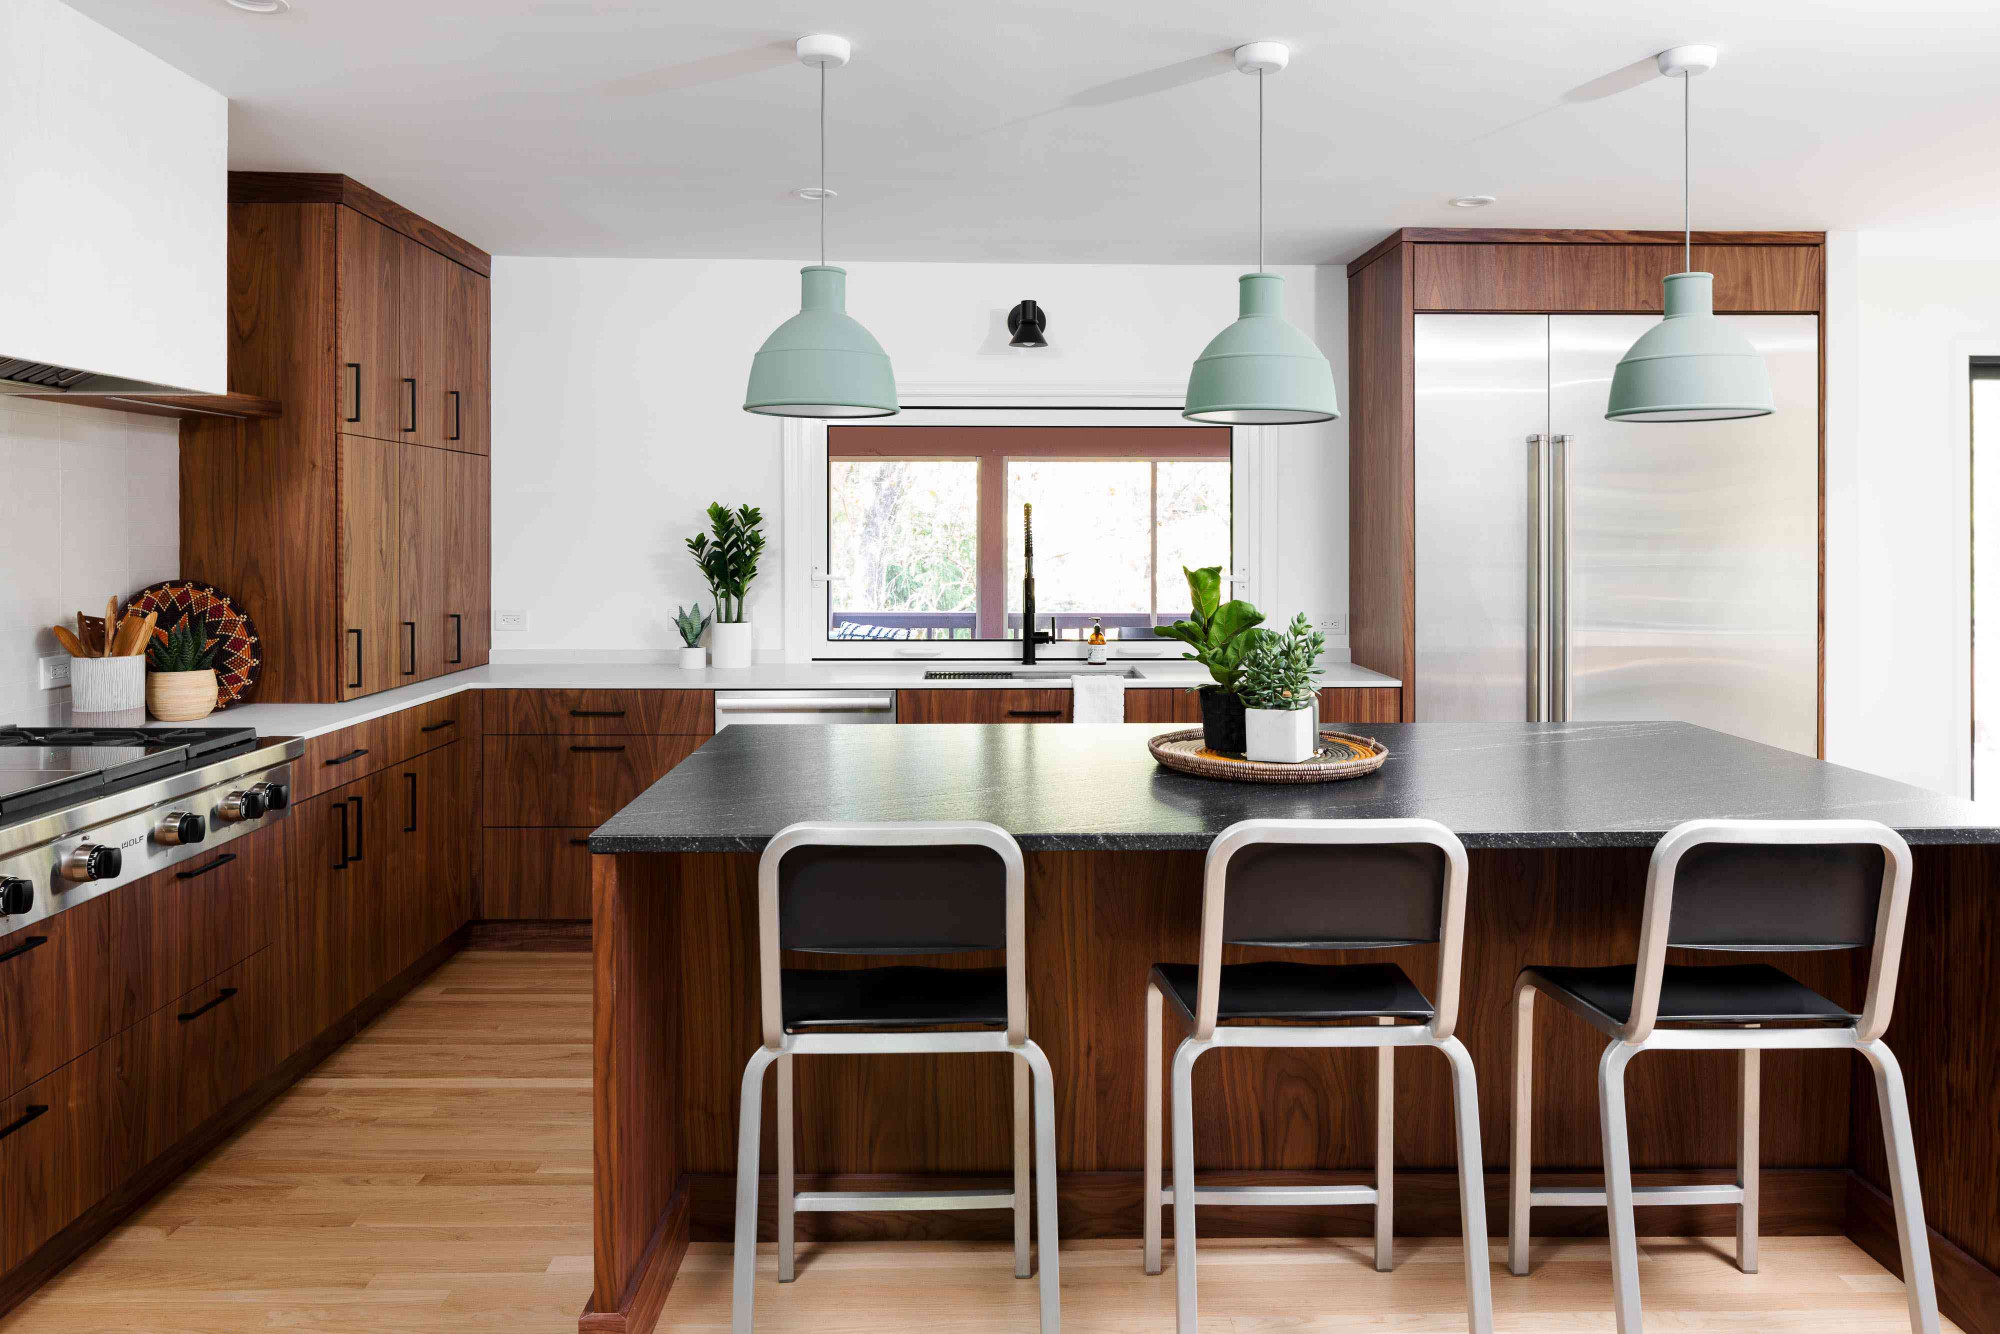 1. TÔNG MÀU TRẮNG NHẠT VÀ ÓC CHÓ nhà bếp với tủ màu trắng nhạt, bàn bếp bằng gỗ sồi và mặt bàn bằng đá cẩm thạch trắng  (Tín dụng hình ảnh: Aimee Mazzenga. Thiết kế: En Masse Architecture & Design) Sự kết hợp cổ điển giữa đen và trắng nhưng nhẹ nhàng hơn. Thay thế màu trắng tinh bằng một tông màu nhạt và độ sắc nét của màu đen bằng màu óc chó sẫm màu, ấm áp và bạn sẽ ngạc nhiên trước không gian của mình sẽ trông tinh tế và êm dịu như thế nào.  Lucas Golbach , Đối tác và Giám đốc Thiết kế tại En Masse Architecture & Design cho biết: “Một căn bếp màu trắng cổ điển với các chi tiết thực sự được thiết kế và cân nhắc kỹ lưỡng có thể mang lại cảm giác rất yên tĩnh nhưng thường thiếu một nơi để mắt bạn nghỉ ngơi” . 'Trong những trường hợp này, chúng tôi muốn đưa vào những khoảnh khắc tương phản. Nhà bếp North Shore của chúng tôi có cửa sổ sơn đen, đảo bếp màu gỗ óc chó tối màu và các tấm kim loại tùy chỉnh ở hai đầu đảo. Điều này cho phép căn bếp màu trắng yên tĩnh bao bọc không gian và biến mất trong khi hòn đảo tạo cảm giác vững chắc và chắc chắn để làm việc hoặc ngồi xung quanh', ông giải thích.  Chọn một yếu tố khác, chẳng hạn như đường vân đá cẩm thạch trên mặt bàn bếp của bạn , để kết hợp tông màu tối hơn và tạo ra cái nhìn gắn kết giữa màu trắng nhạt và màu gỗ óc chó.